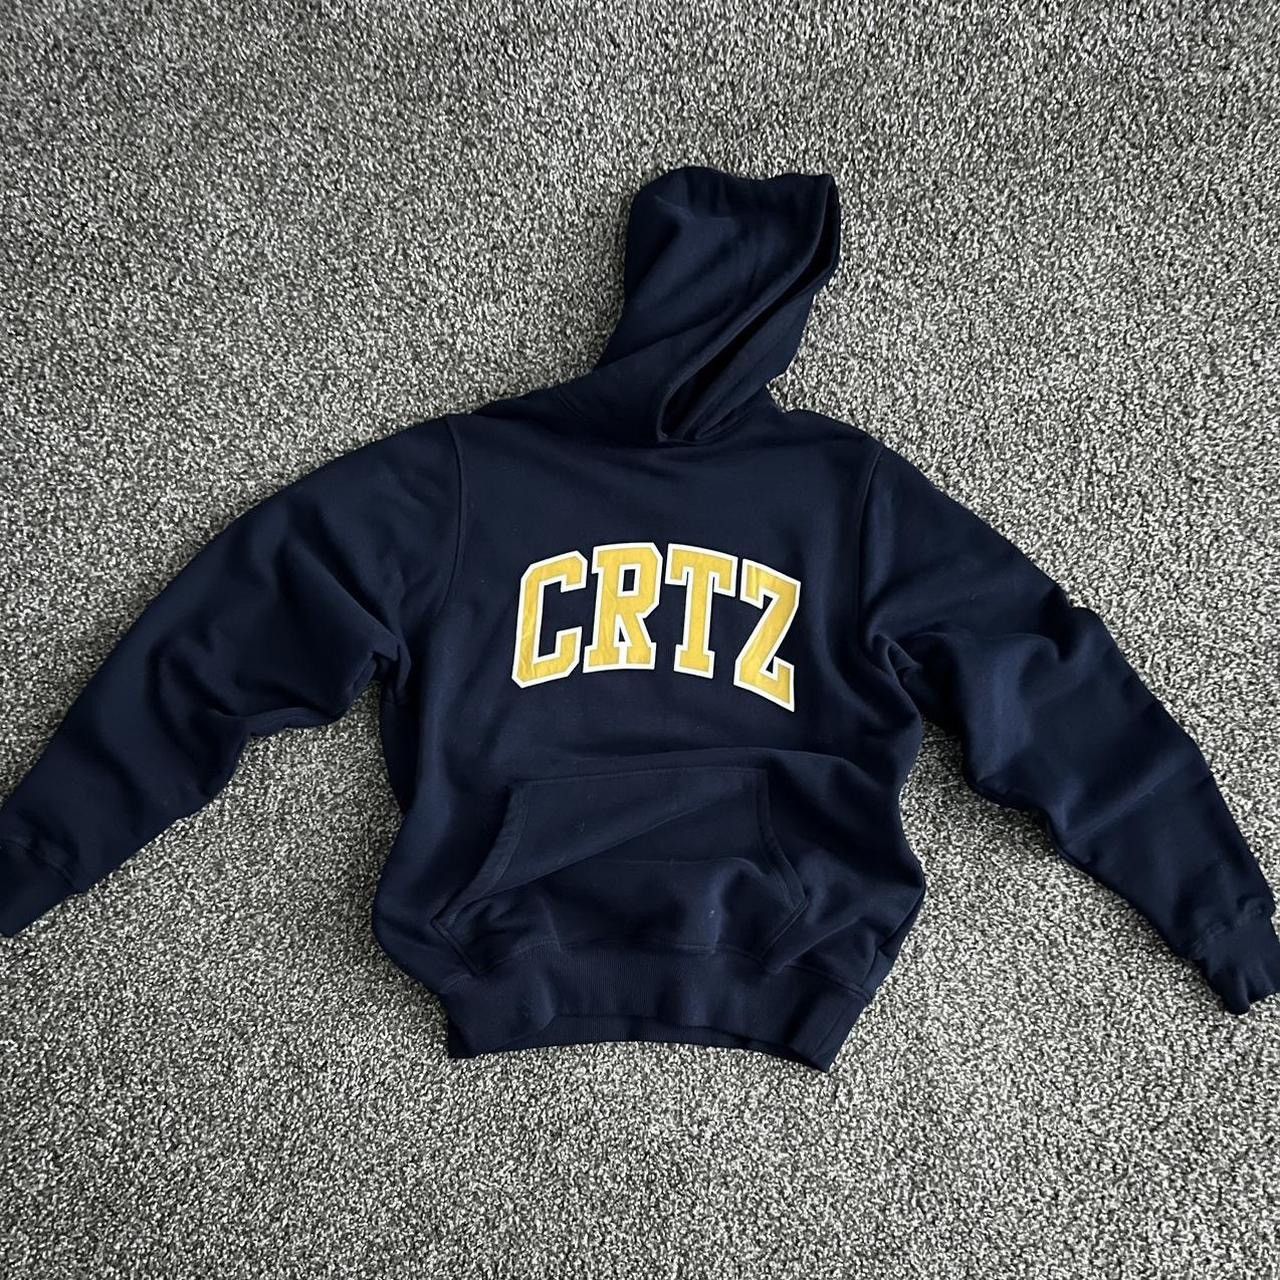 Corteiz Corteiz Crtz dropout hoodie | Grailed